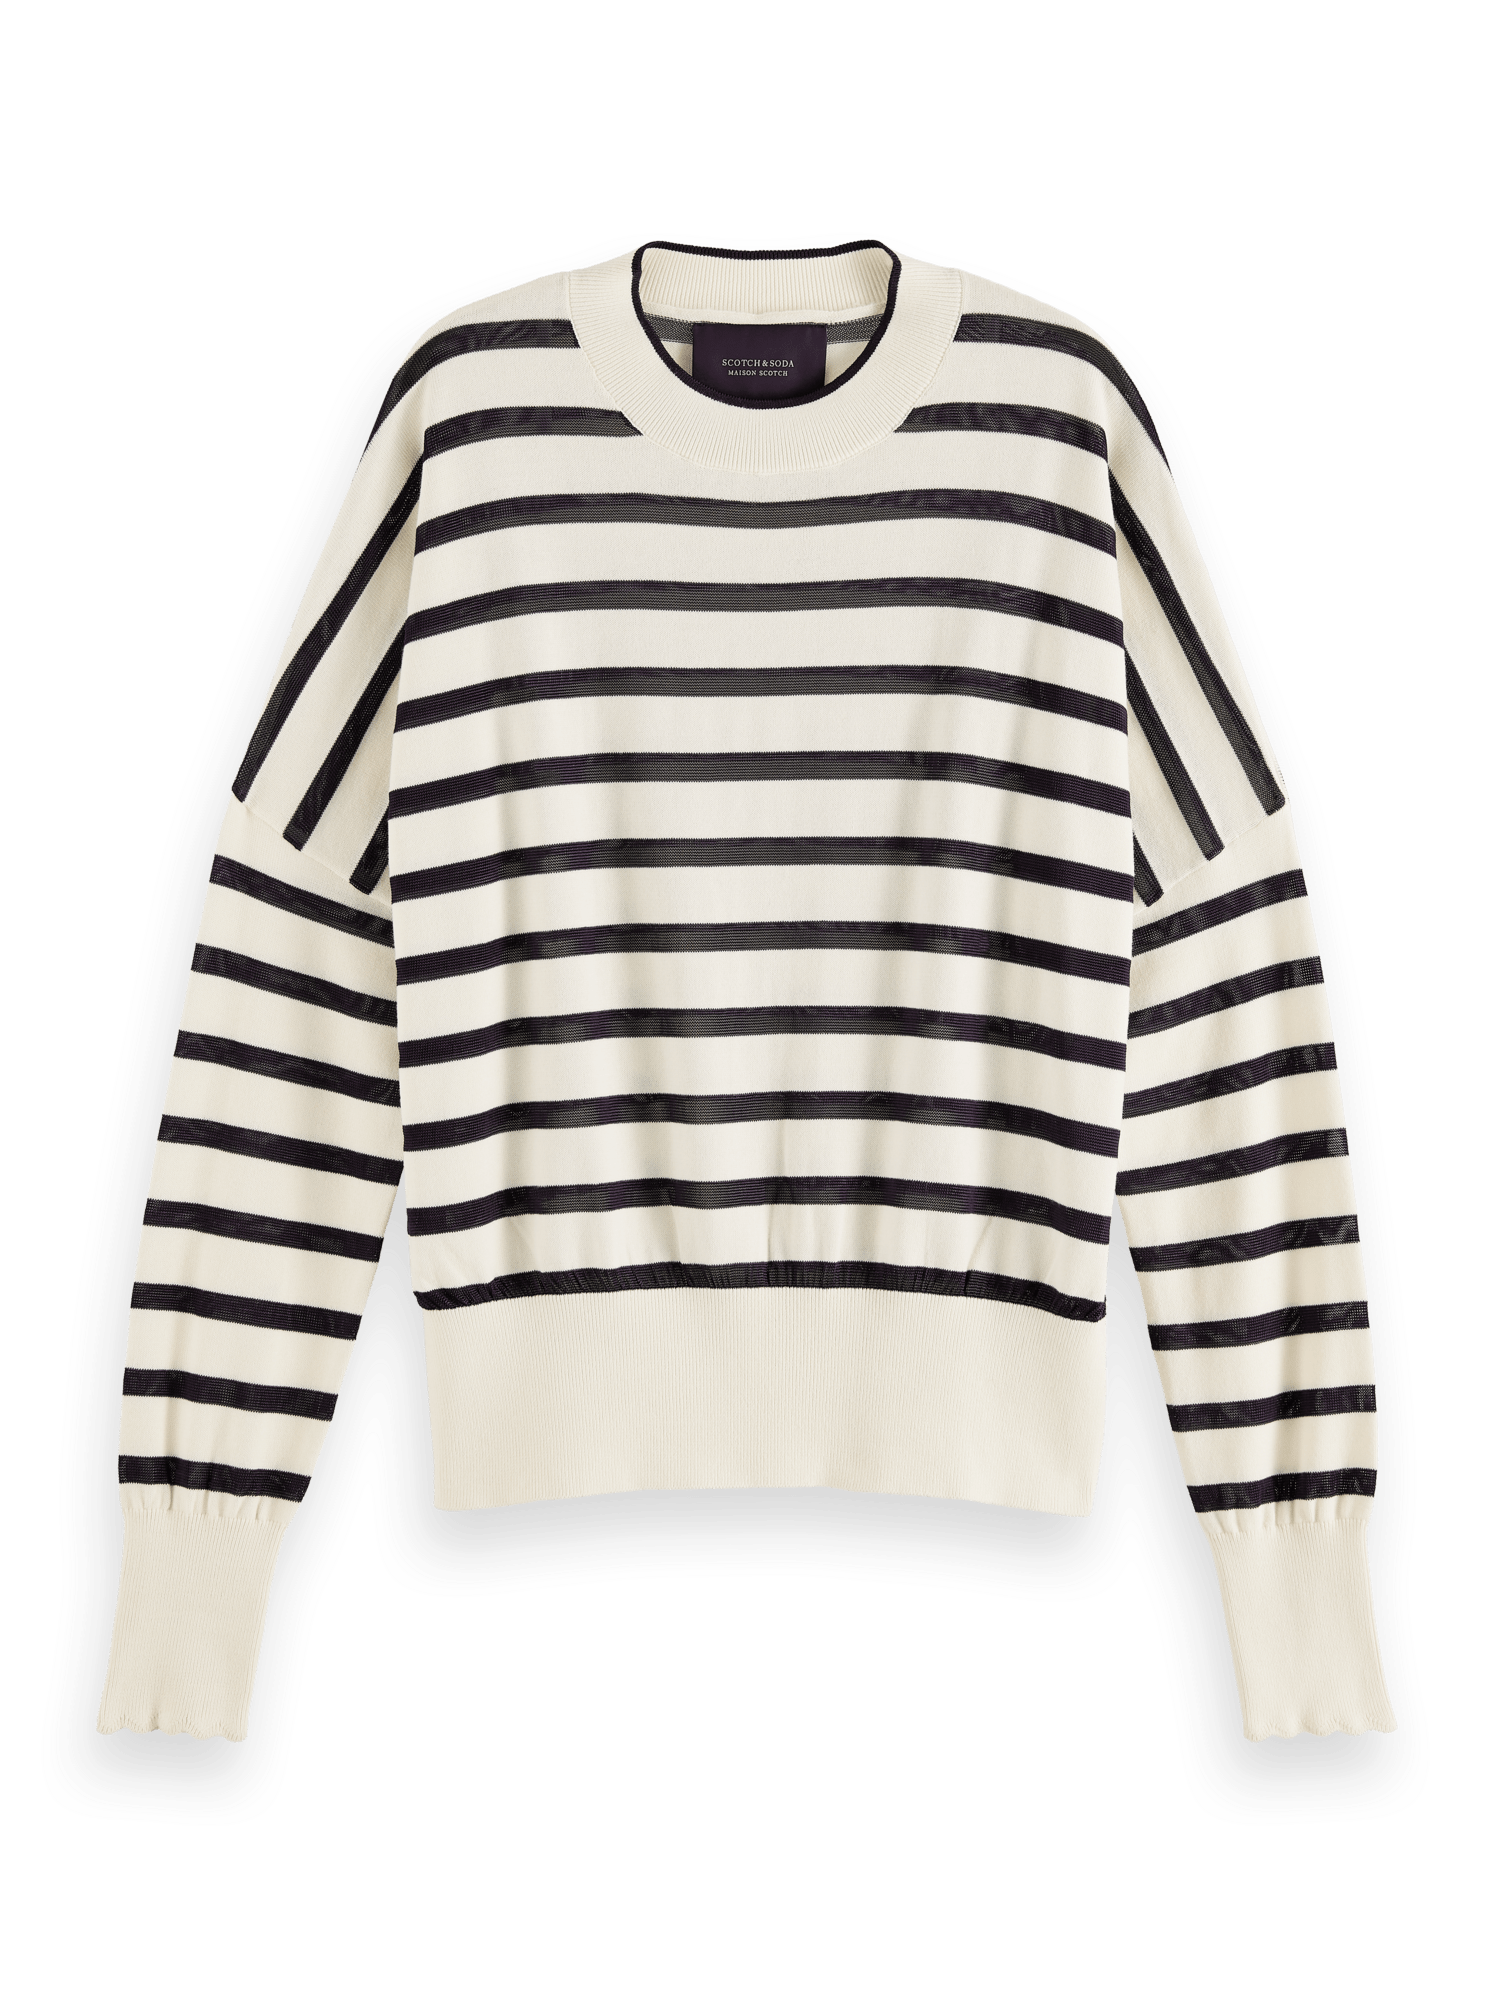 Xlarge PNG 21144630 FNT min Dezeni, boje, sloboda – ovo je 8 atraktivnih odevnih kombinacija koje će obeležiti jesenju modnu sezonu